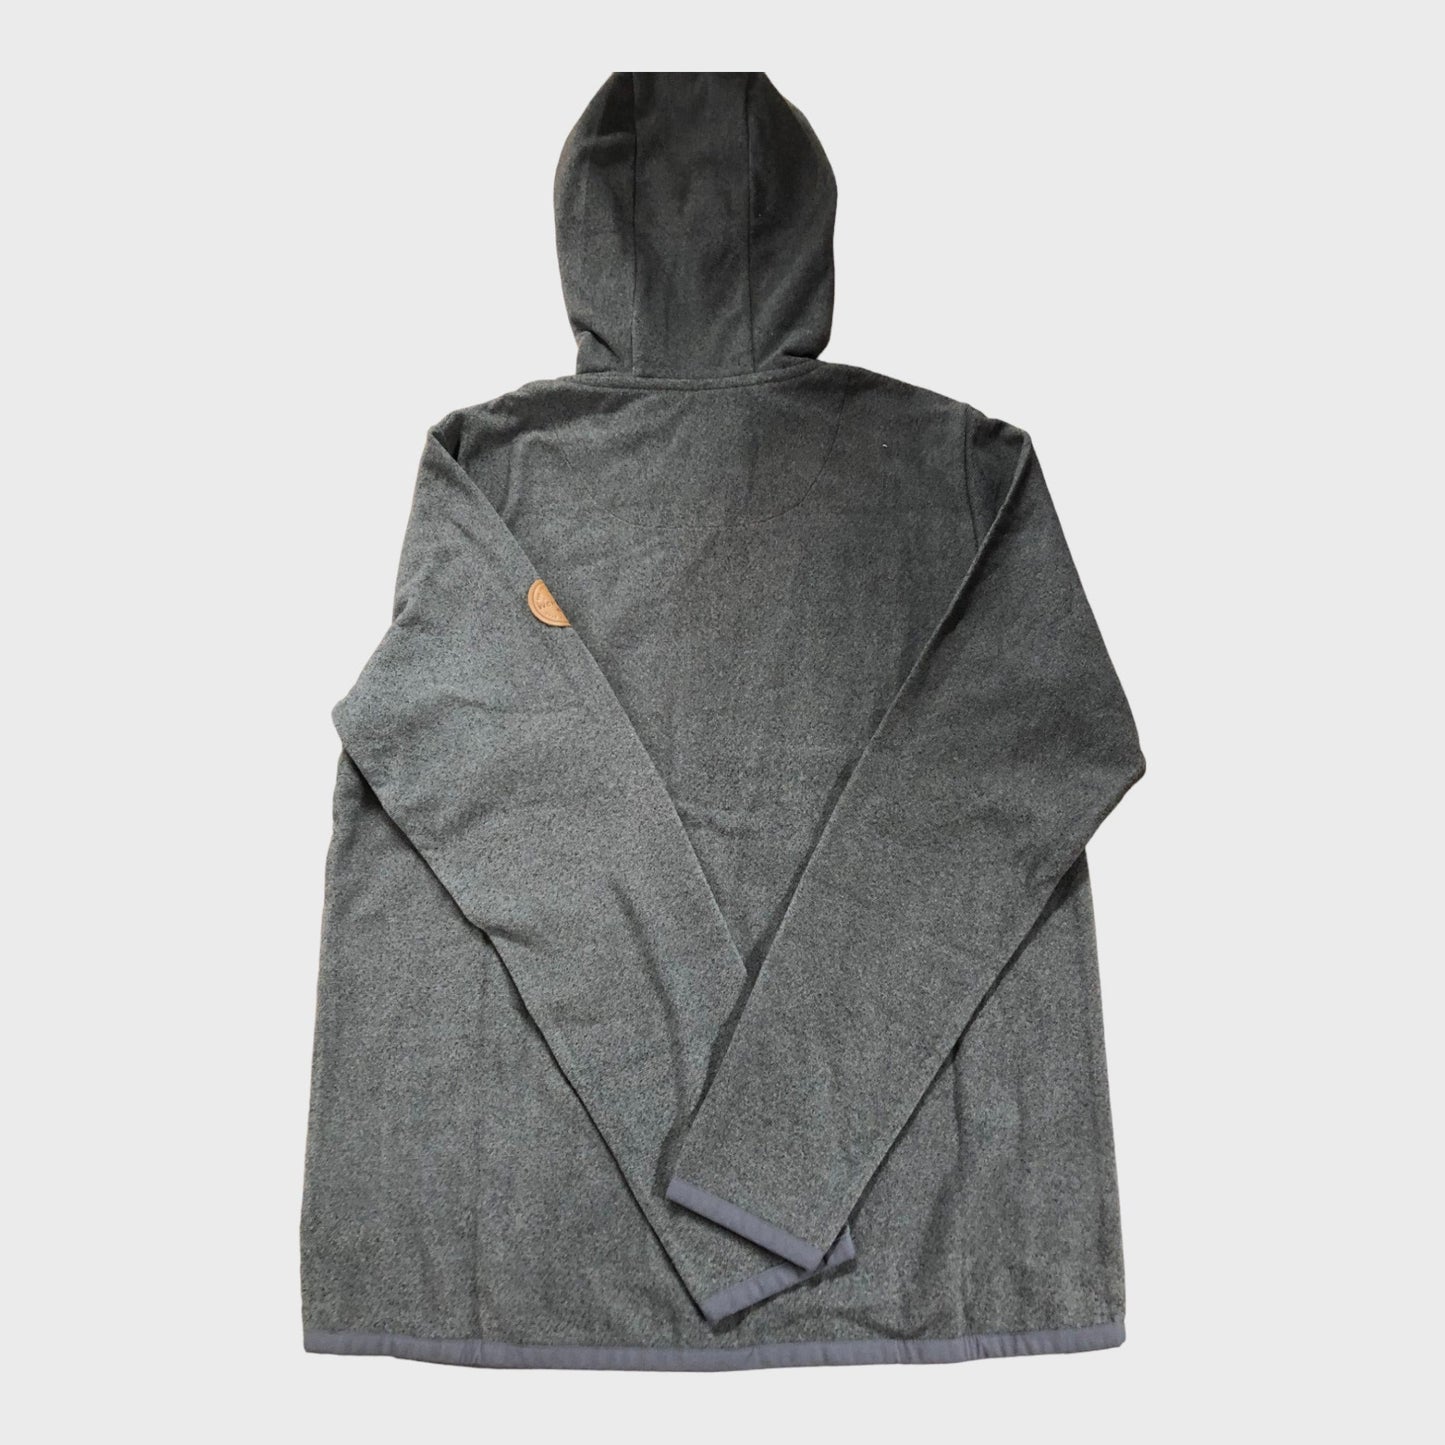 Charcoal Zip Up Hooded Fleece